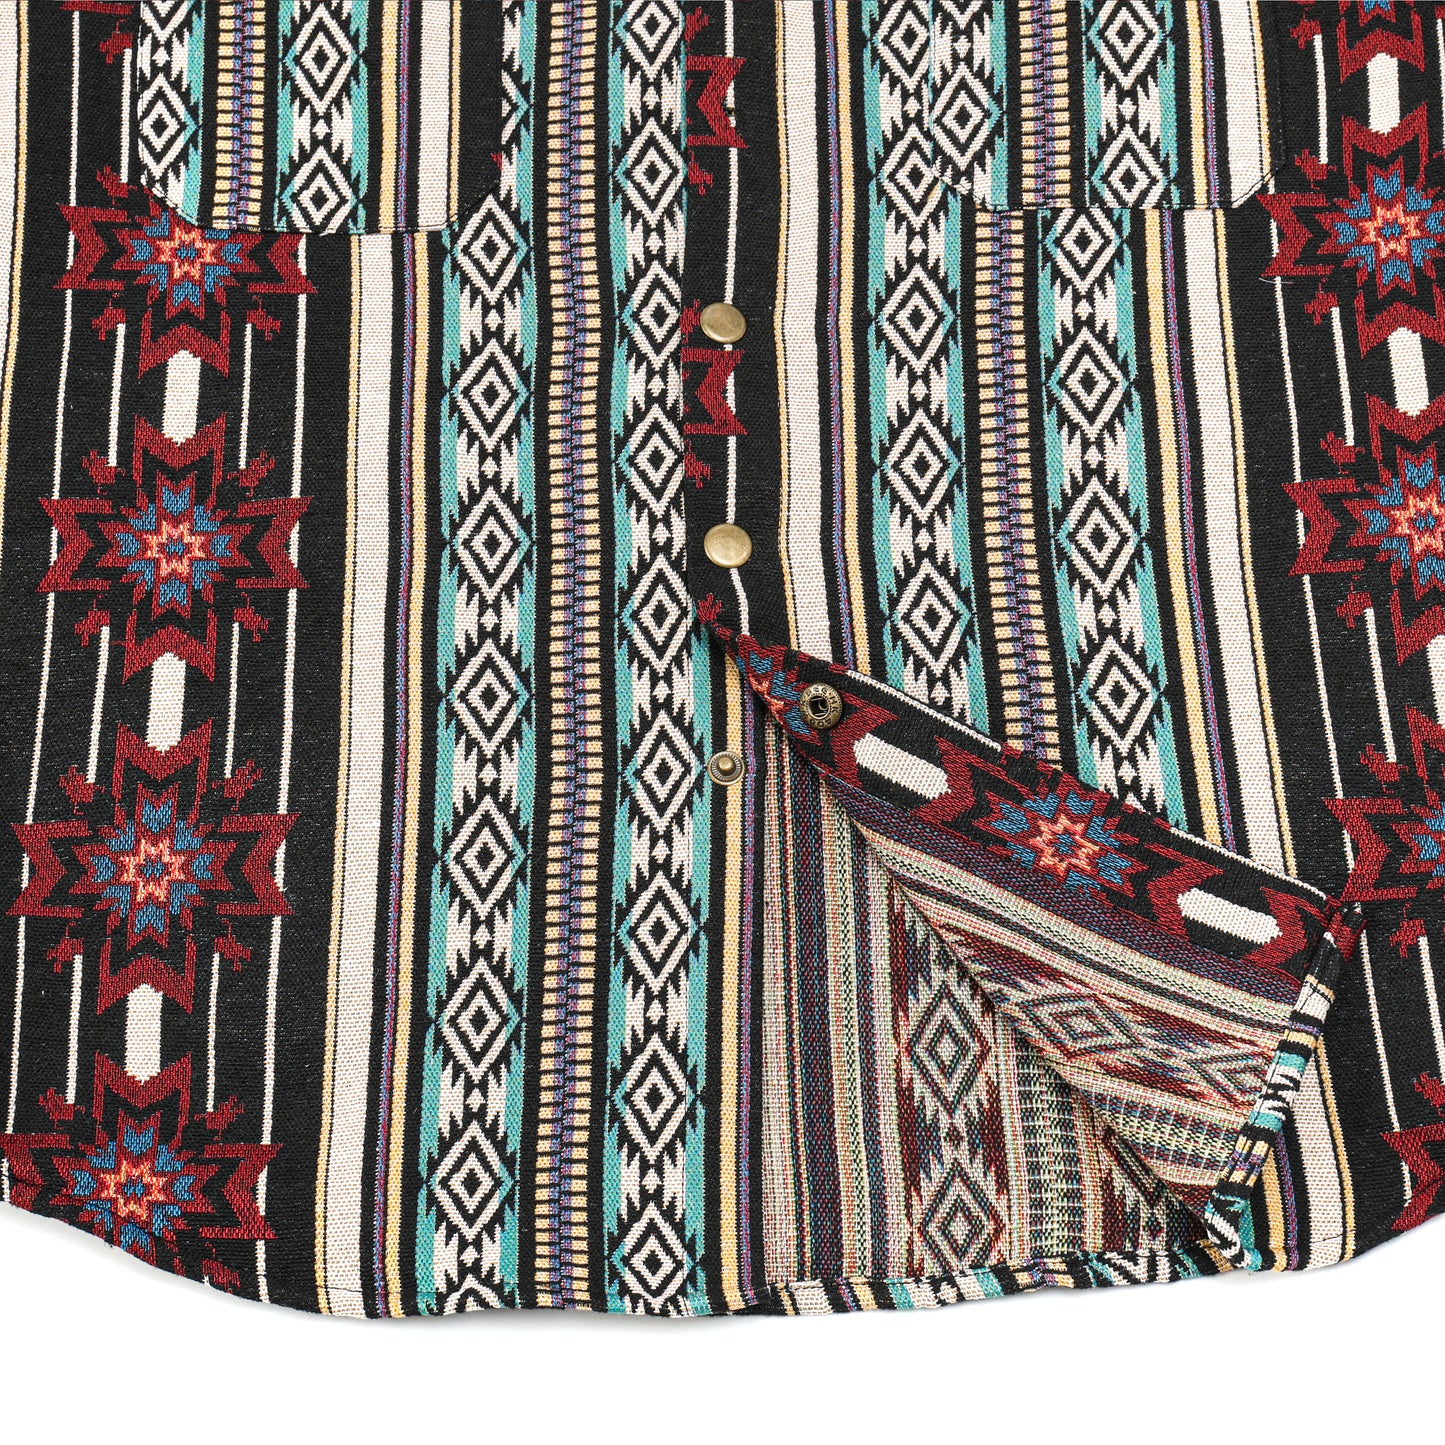 Tribal Aztec Jacquard Heavy Fabric Shacket